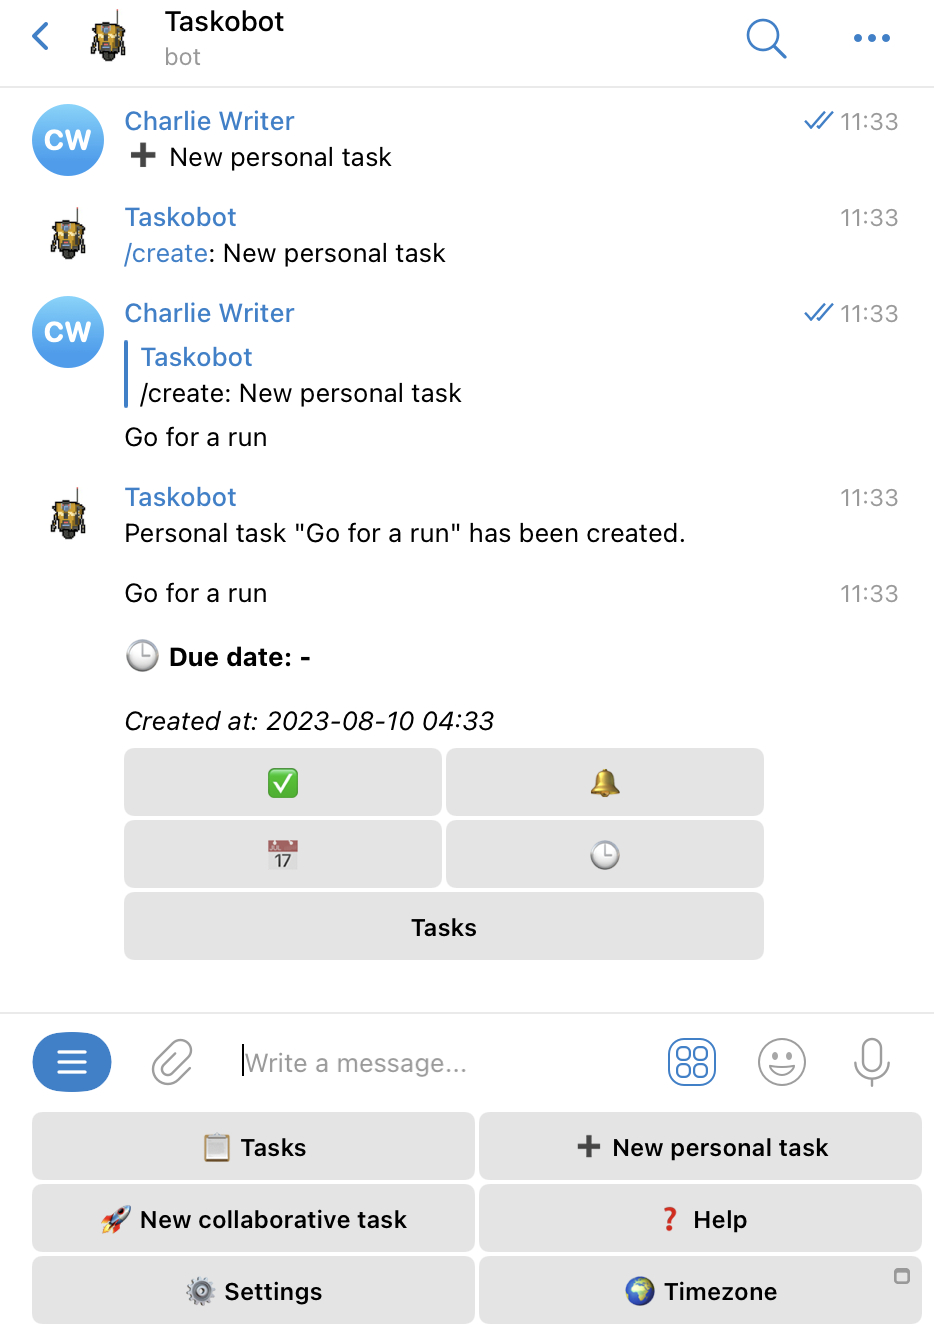 Taskobot setting up tasks